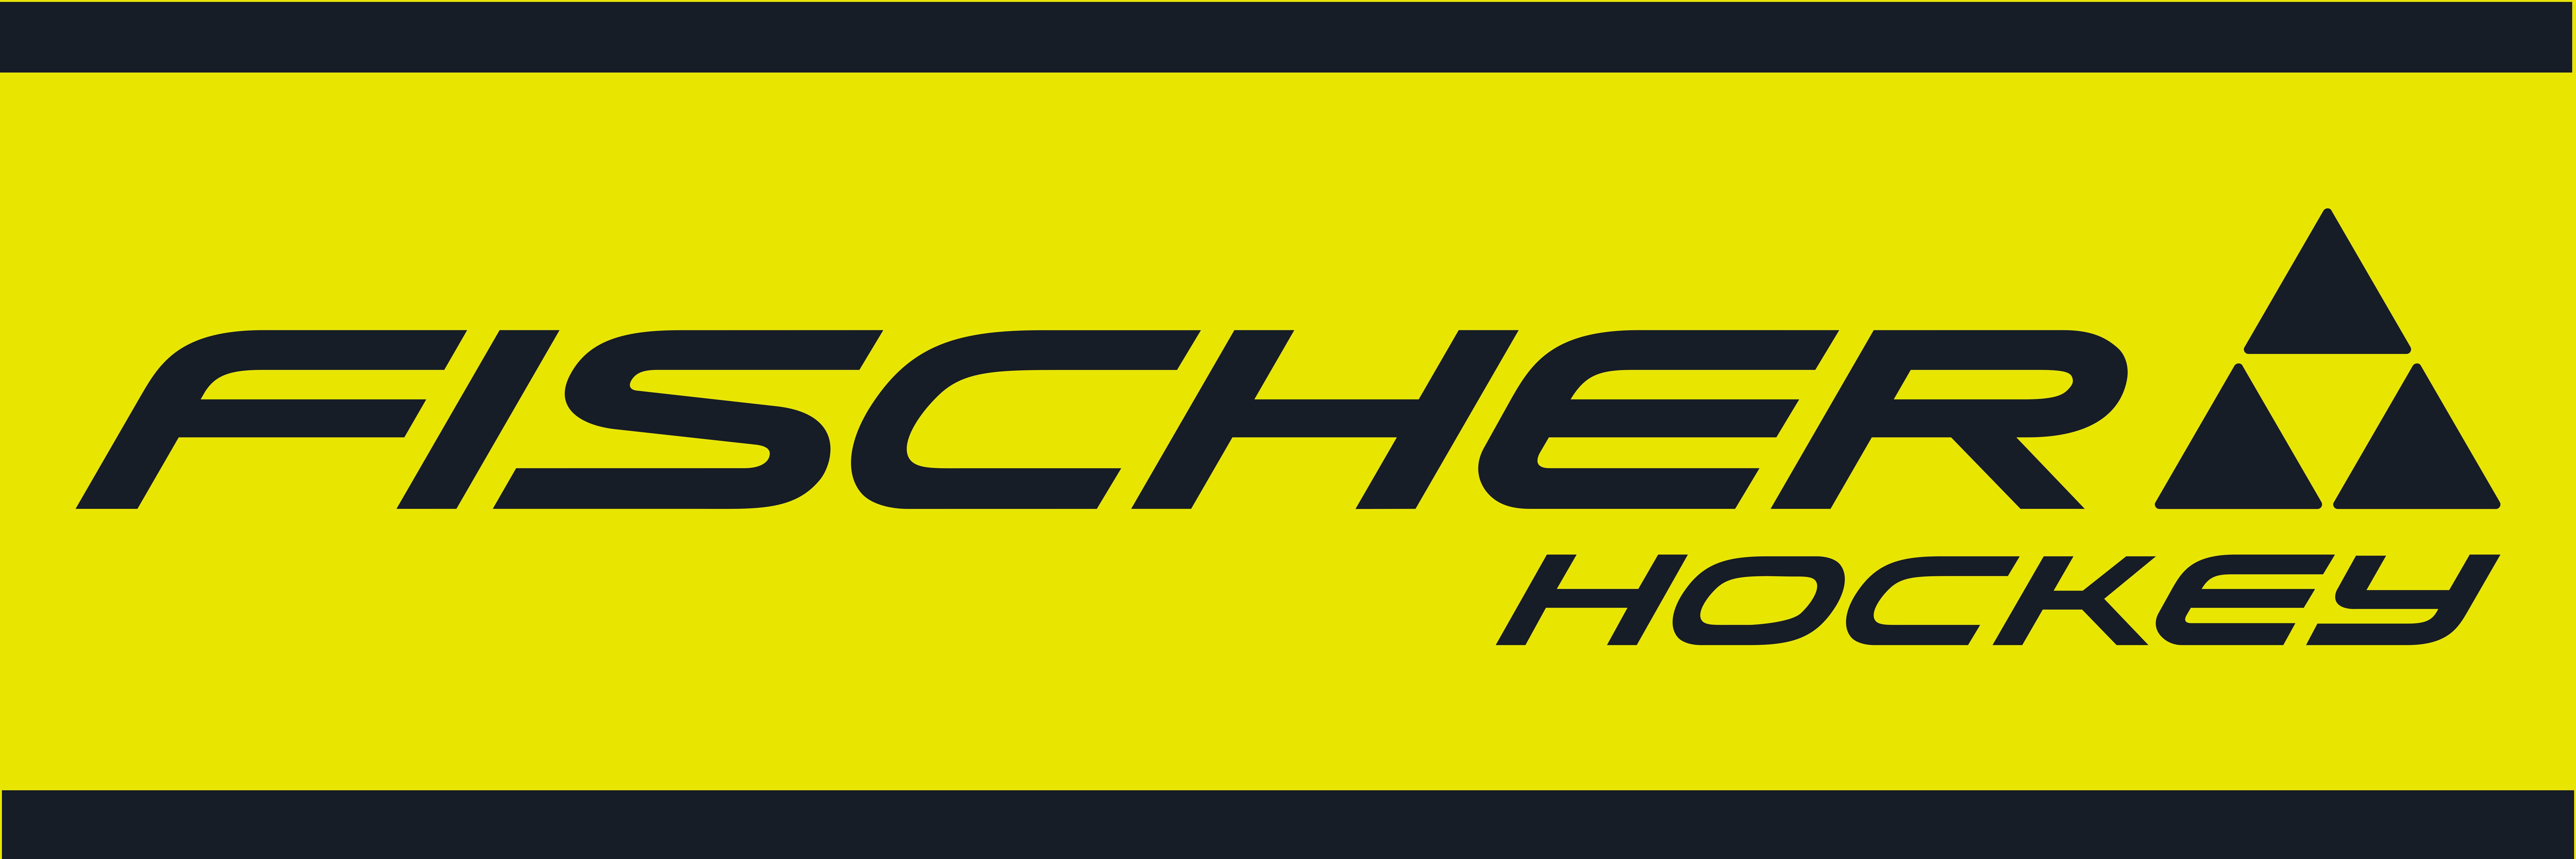 Fischer Hockey of the Rockies | Fischer Hockey of the Rockies